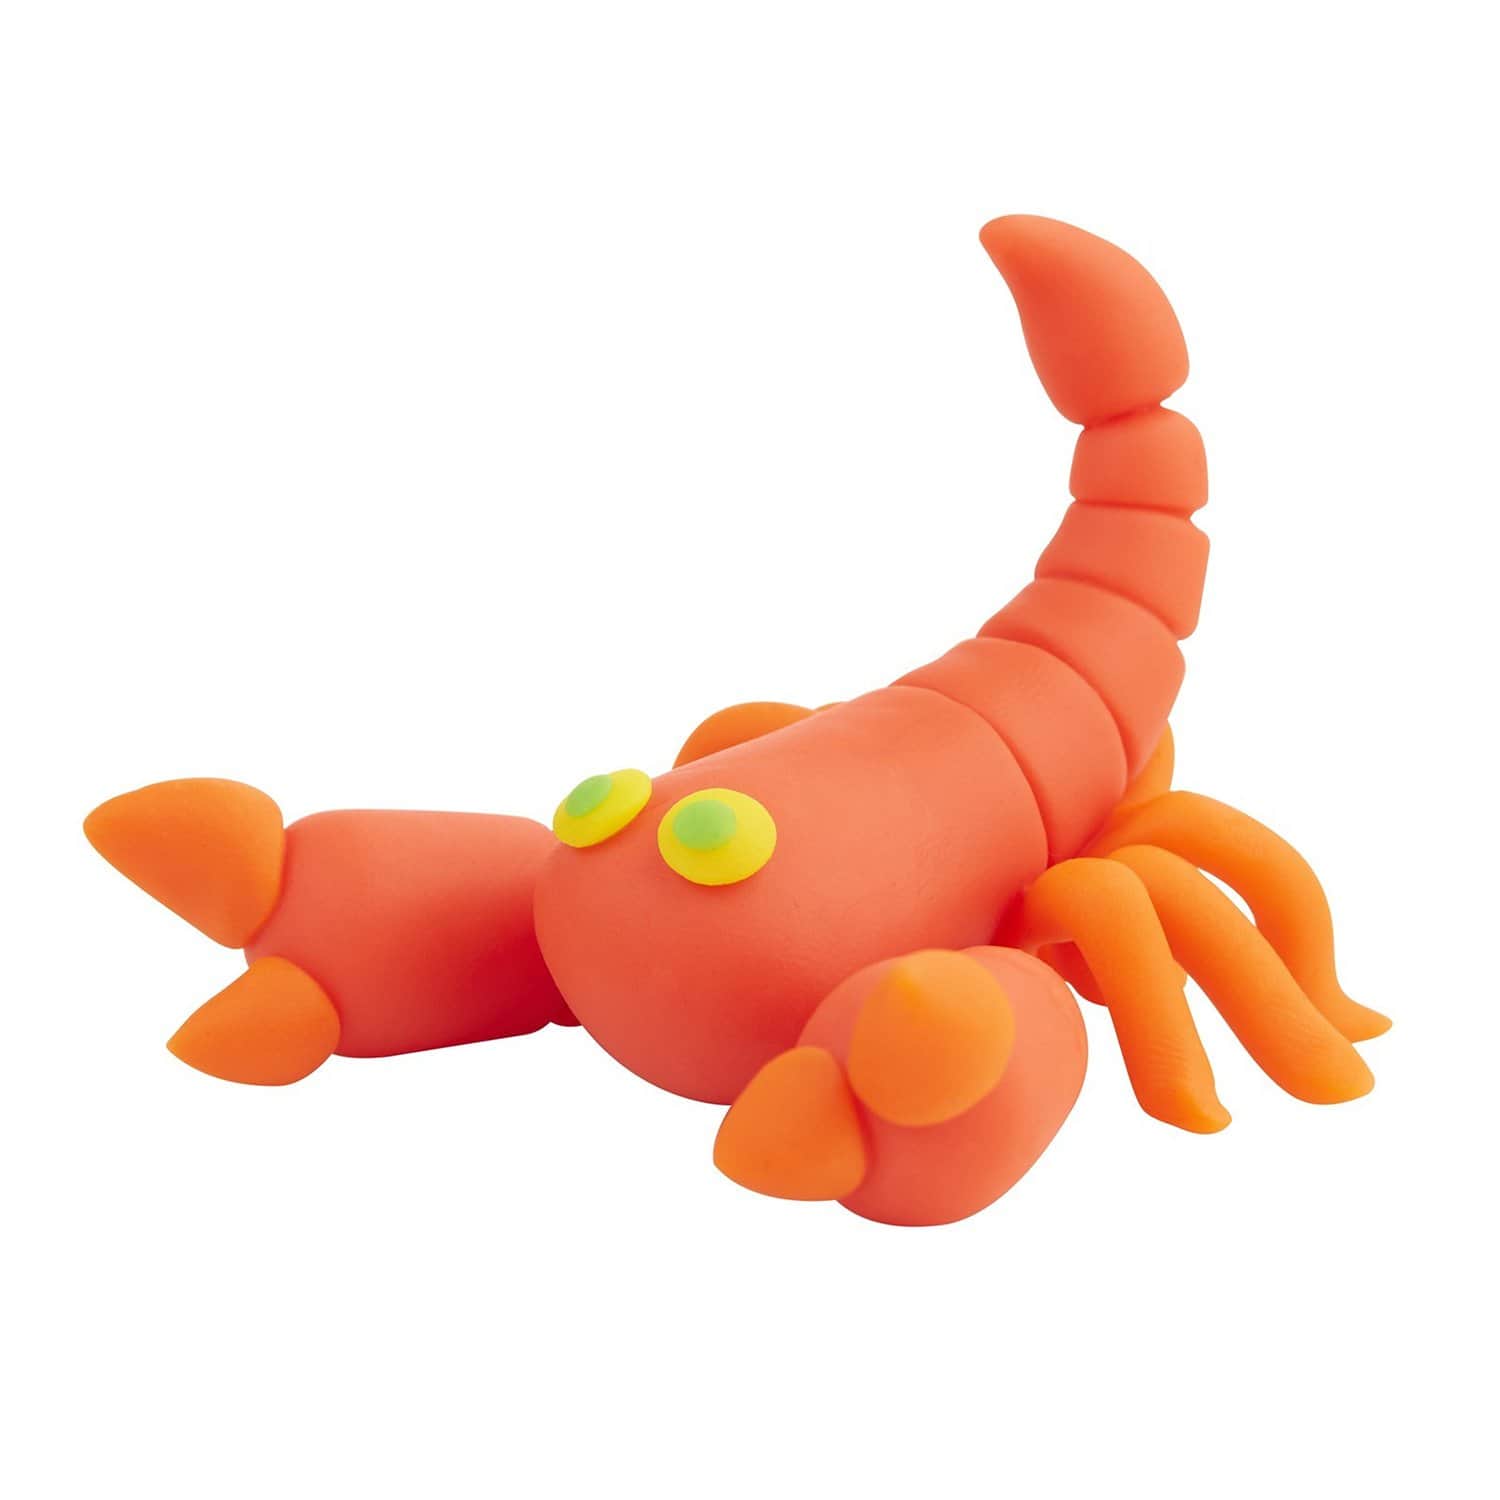 Набор игровой Play-Doh Могучий динозавр E1952